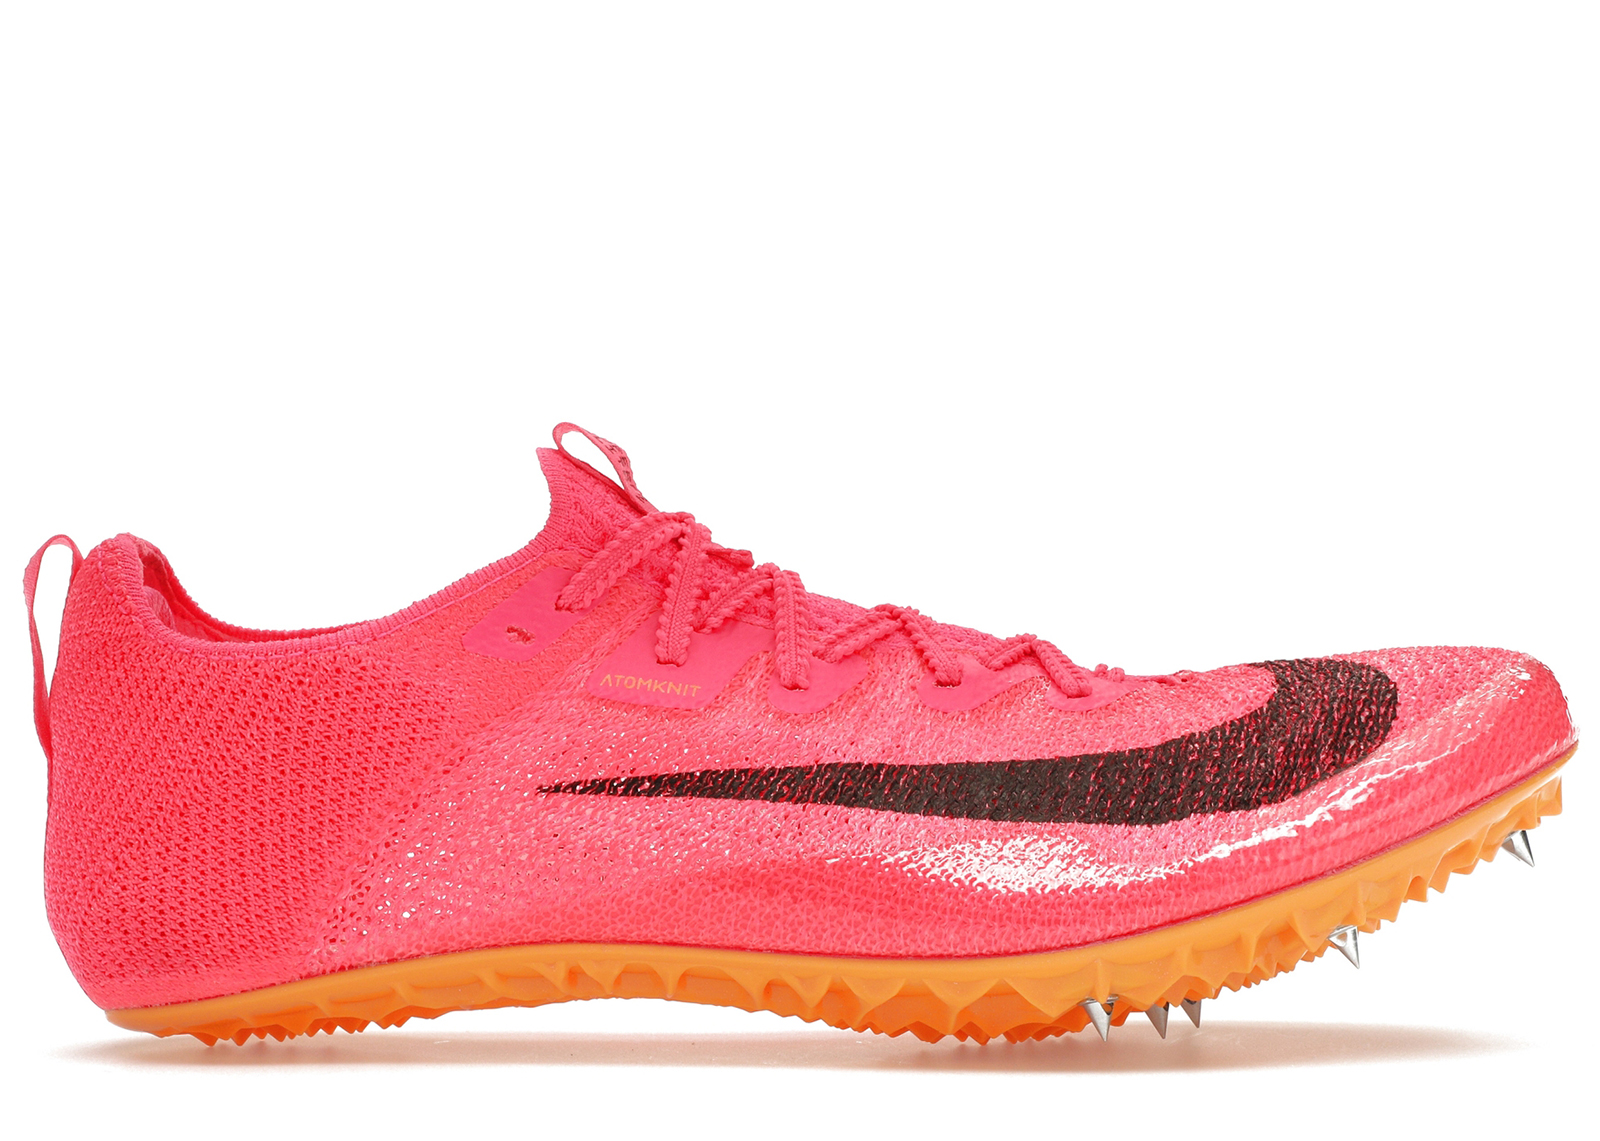 Nike Zoom Superfly Elite 2 Hyper Pink Men's - CD4382-600 - GB